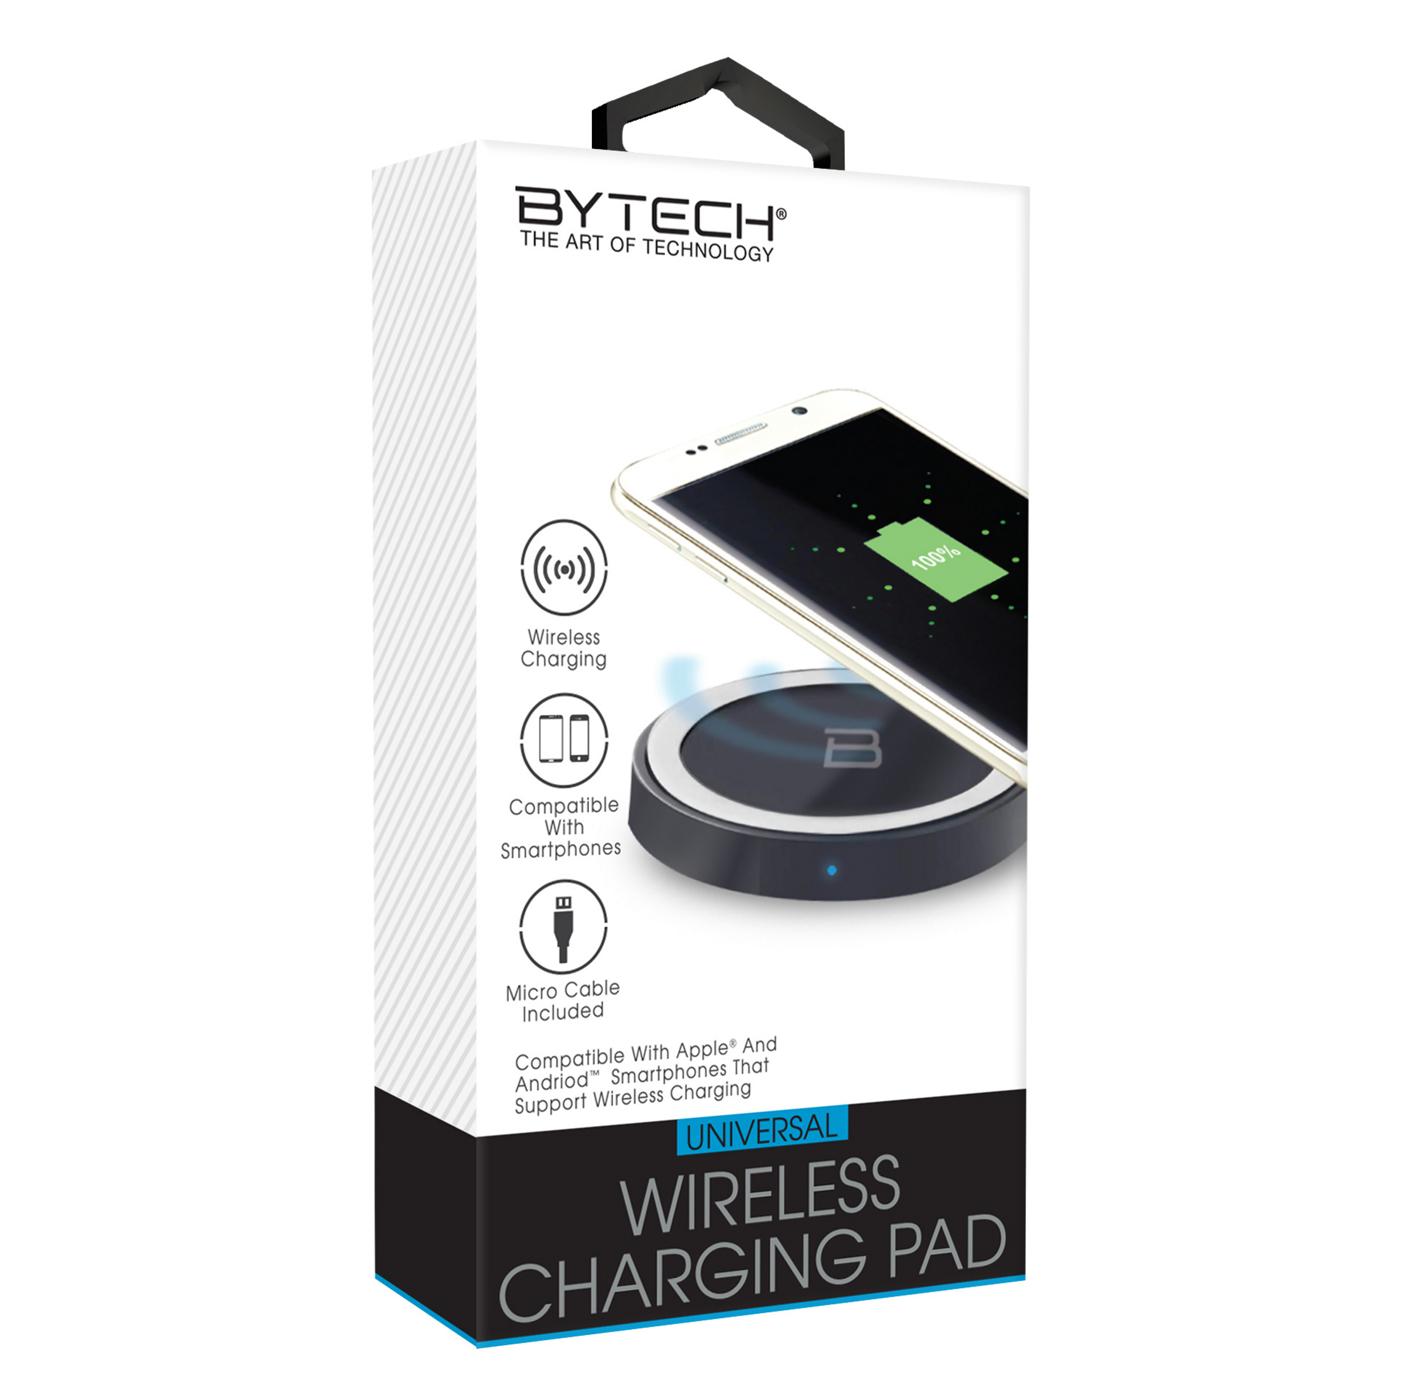 Bytech Universal Wireless Charging Pad - Black; image 1 of 2